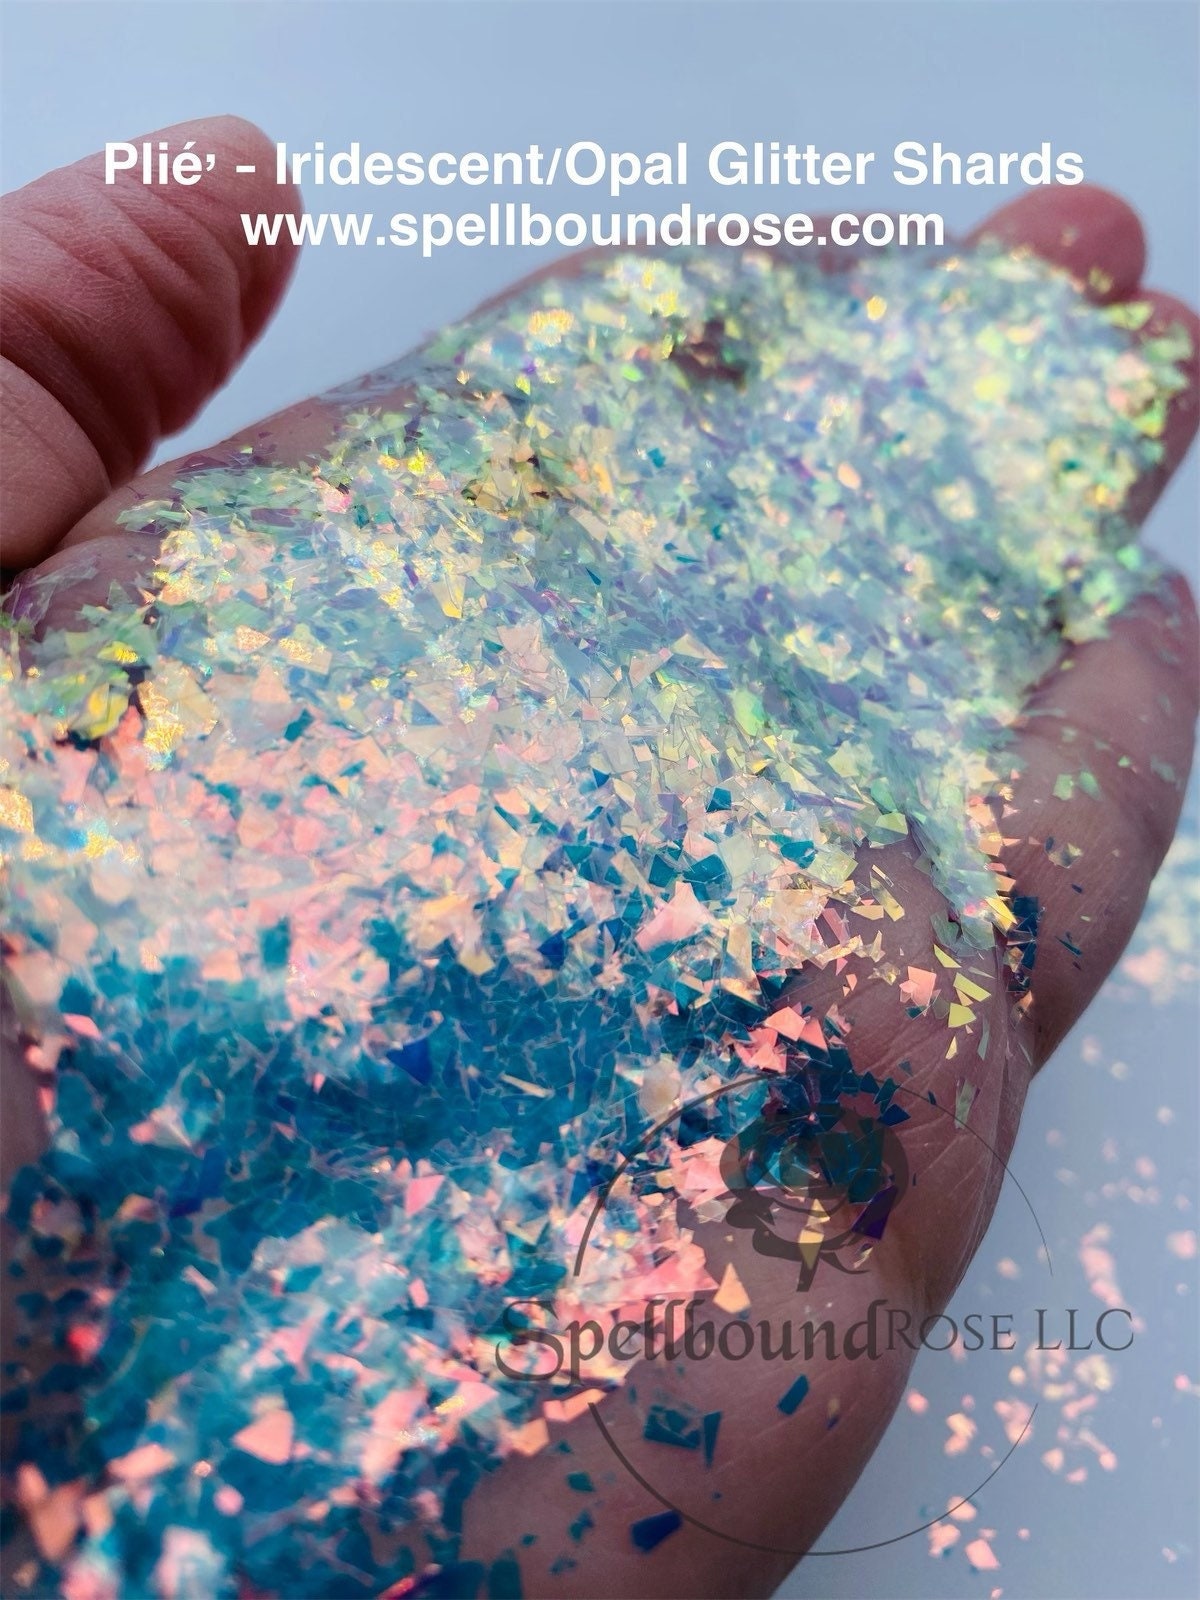 Crystal Shard Lollipop Acrylic Charm - Rainbow Holo/Glitter – Jelly Ultra